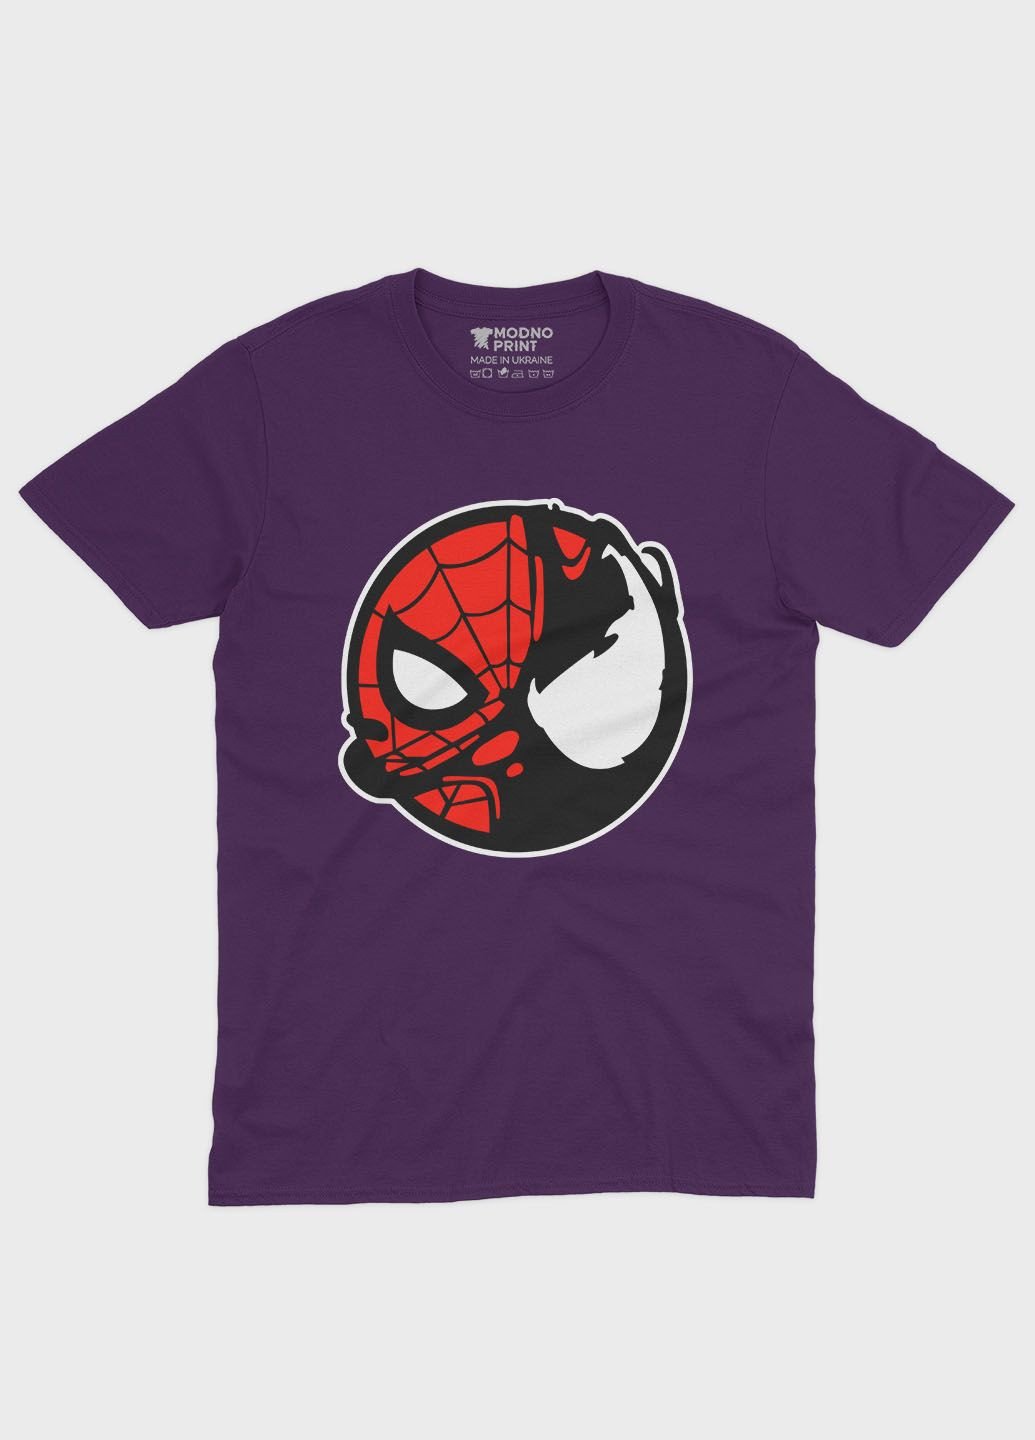 Фіолетова демісезонна футболка для дівчинки з принтом супергероя - людина-павук (ts001-1-dby-006-014-100-g) Modno